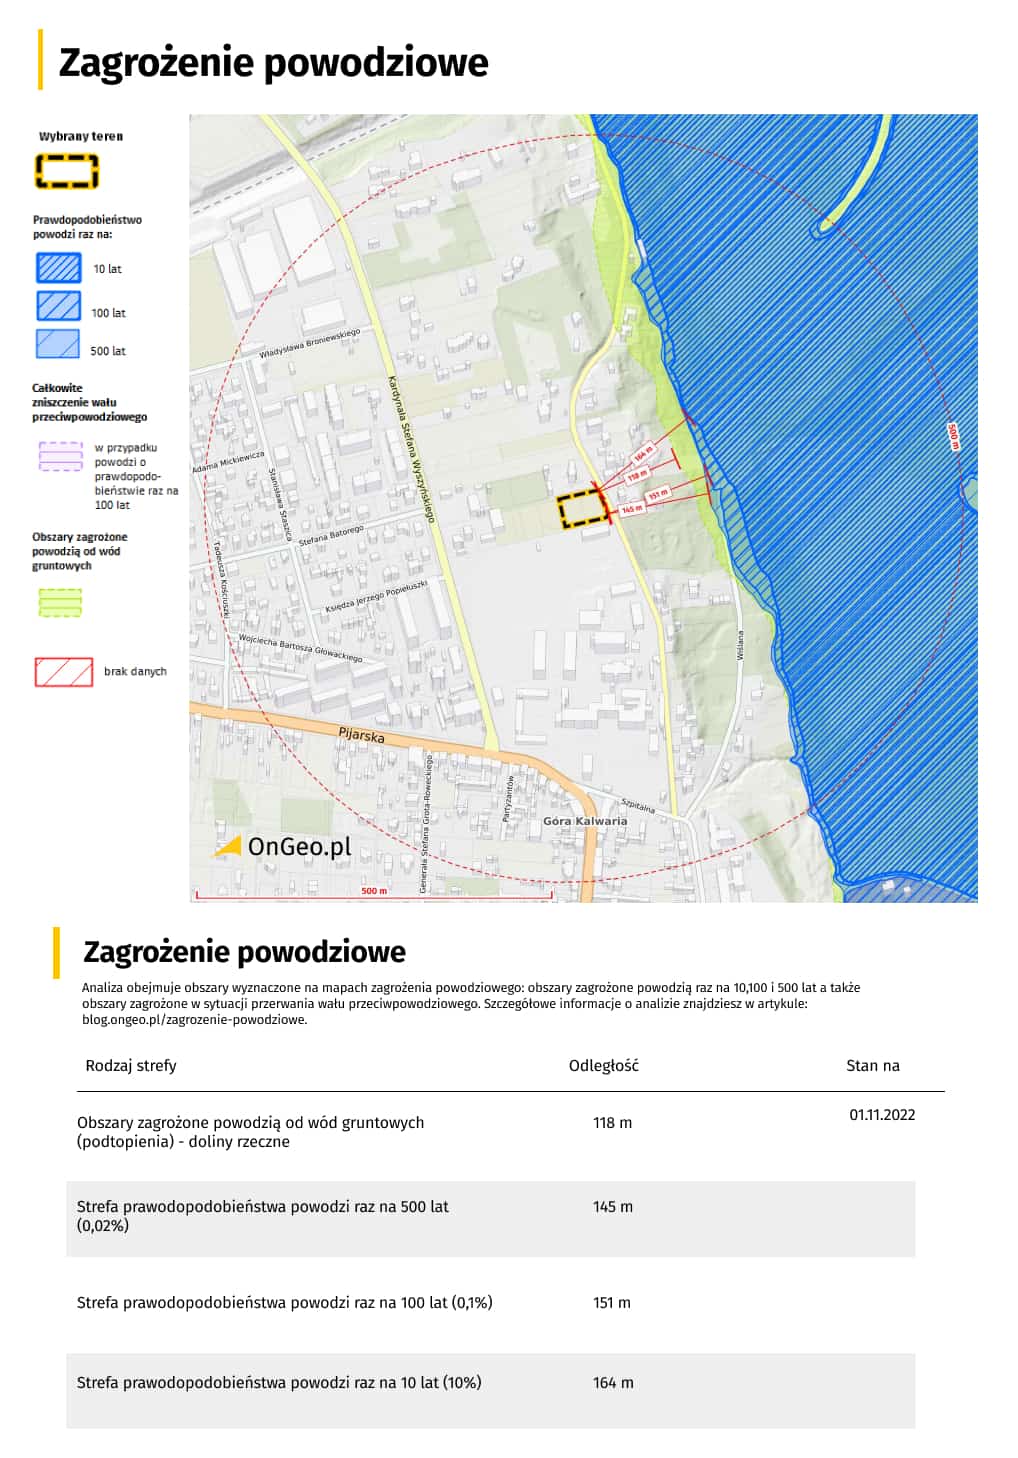 Obszary zagrożone powodzią od wód gruntowych i strefy zalewowe w Raporcie OnGeo.pl